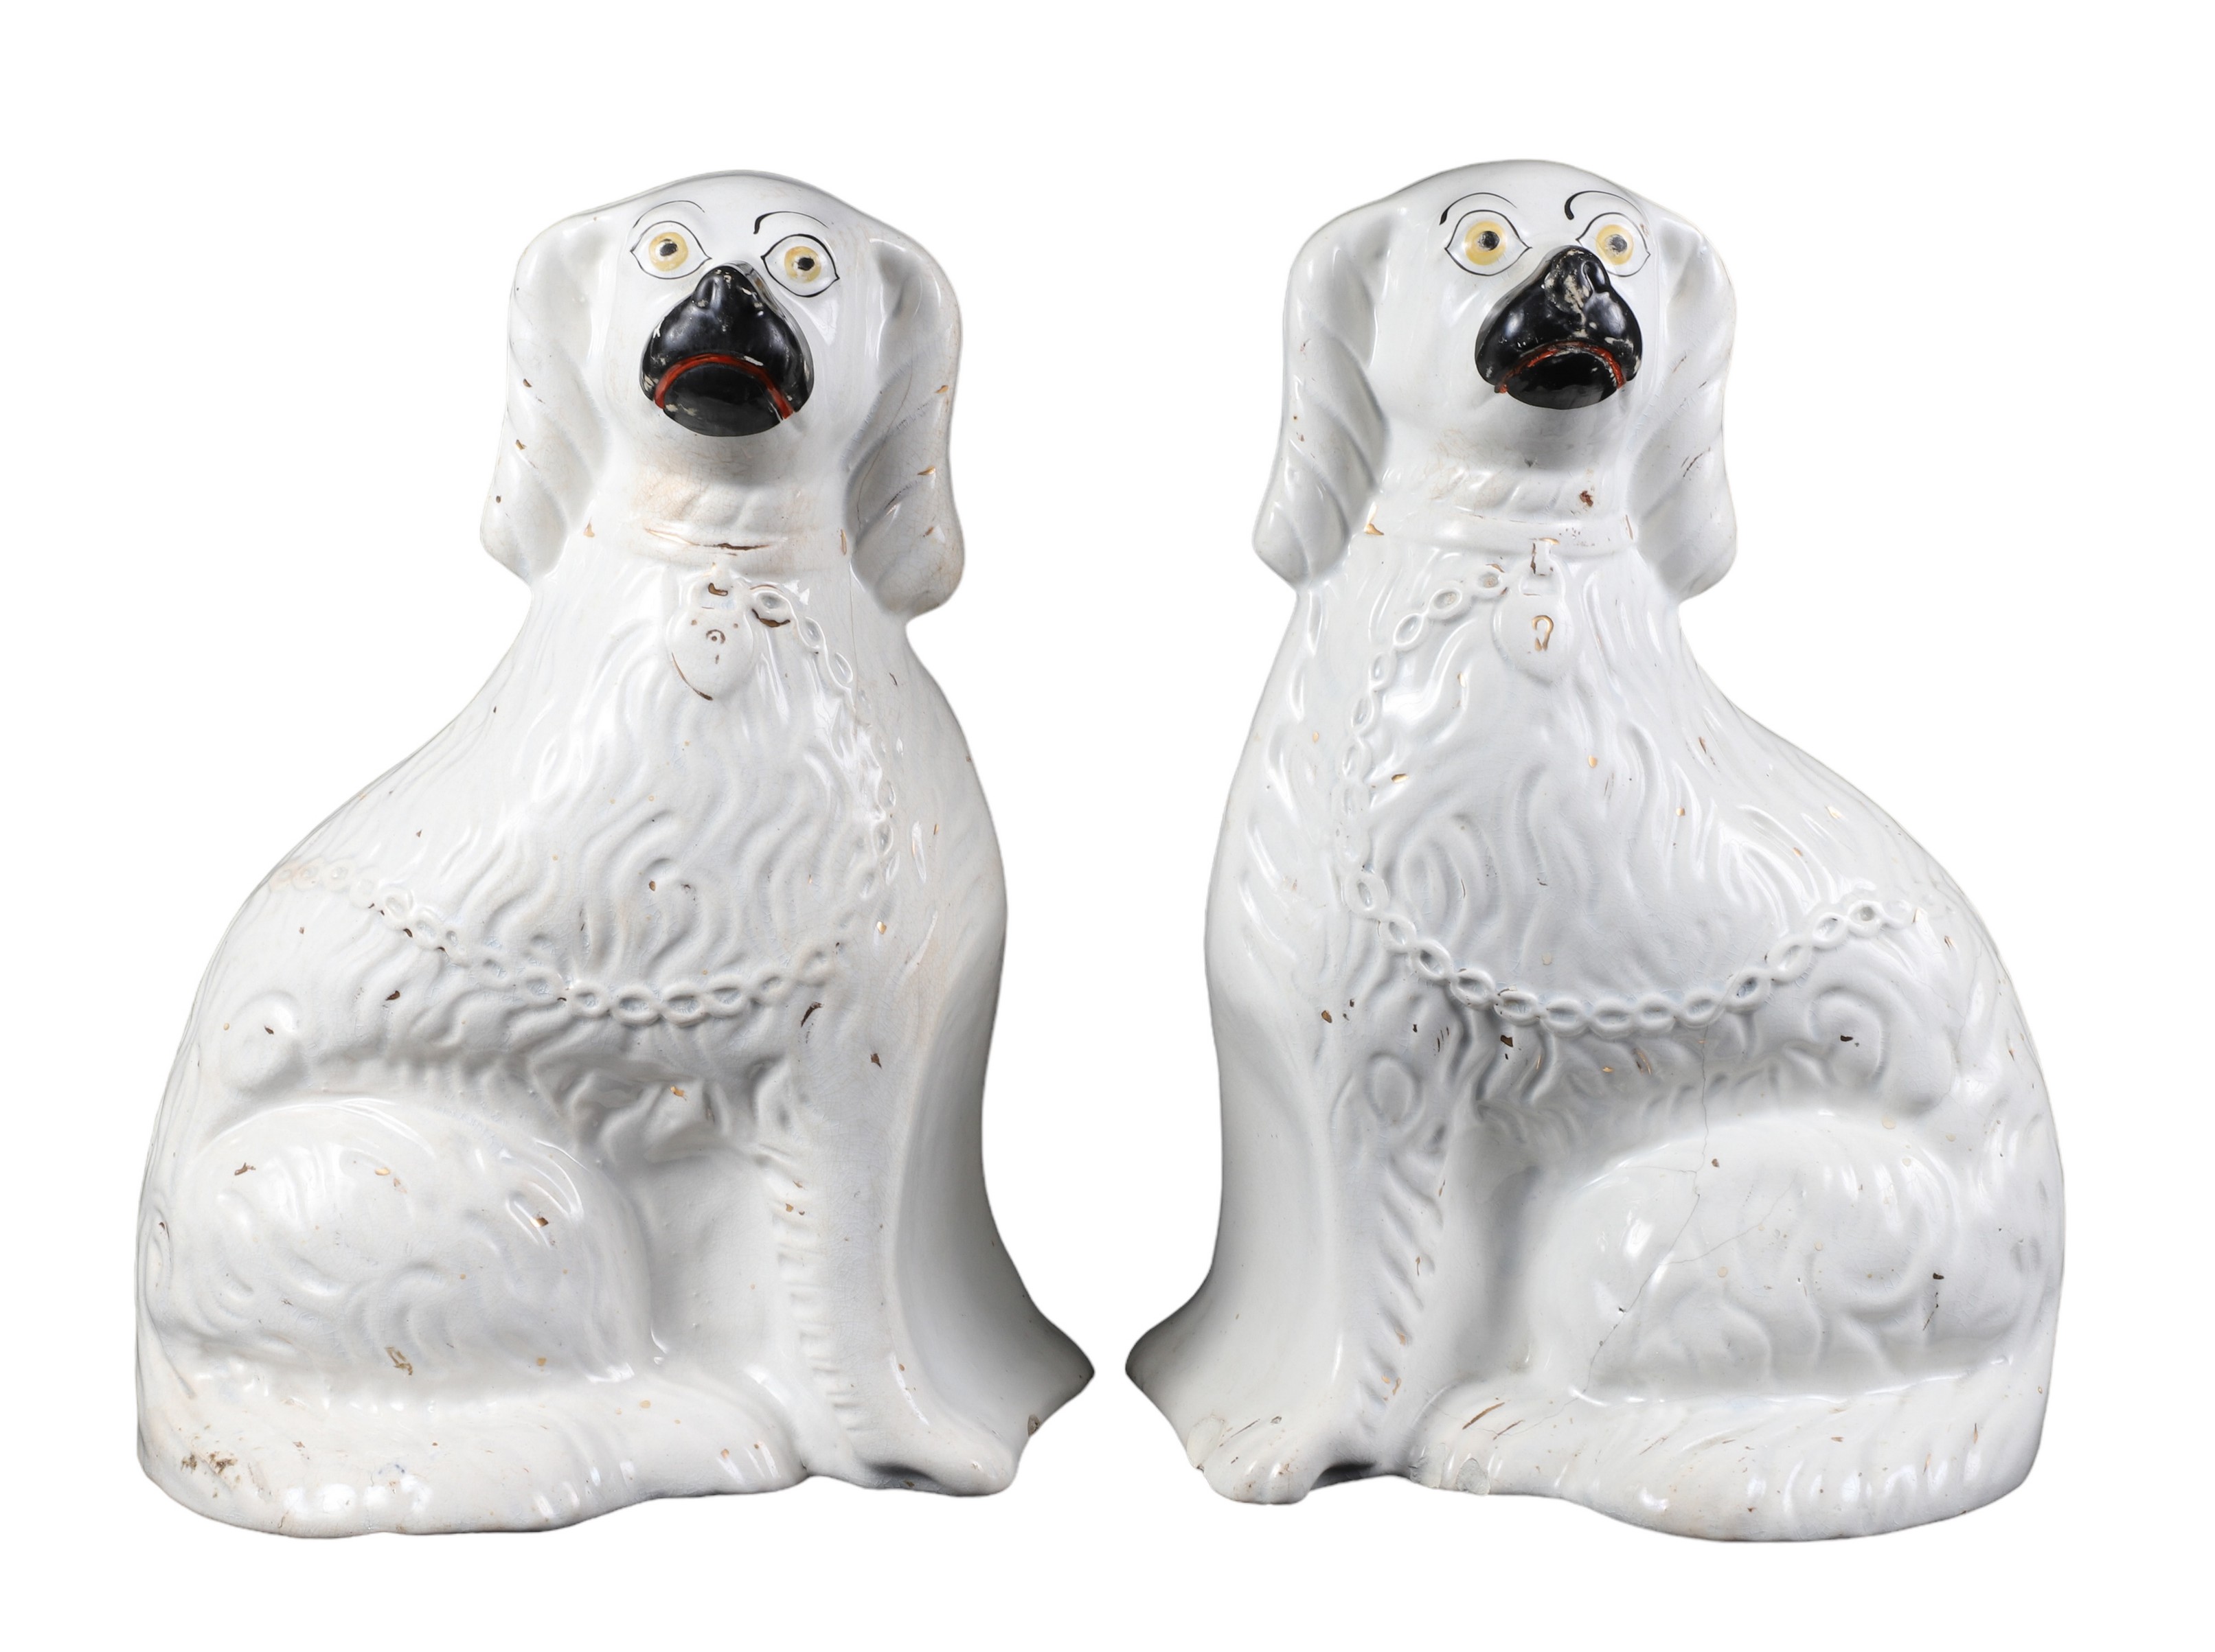  2 Staffordshire porcelain dog 2e134c